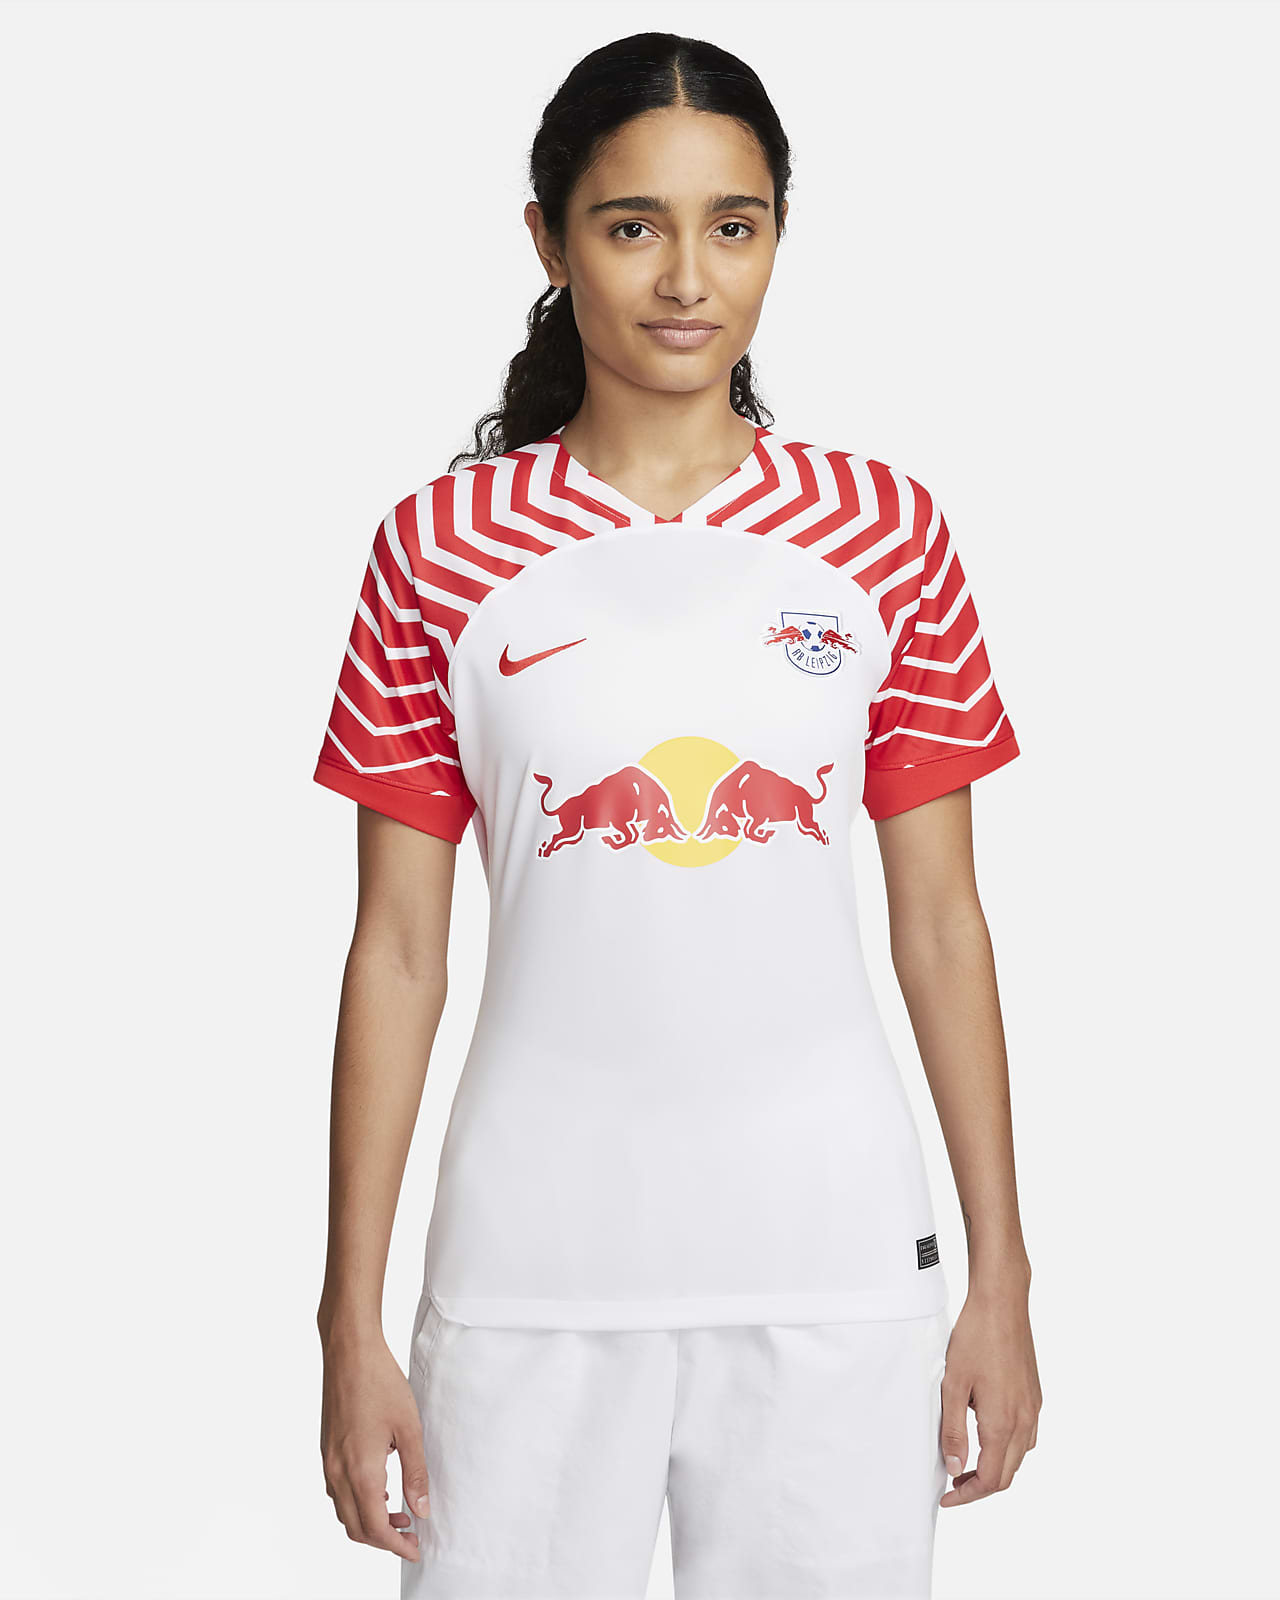 RB Leipzig 2023/24 Stadium Home Women's Nike Dri-FIT Football Shirt